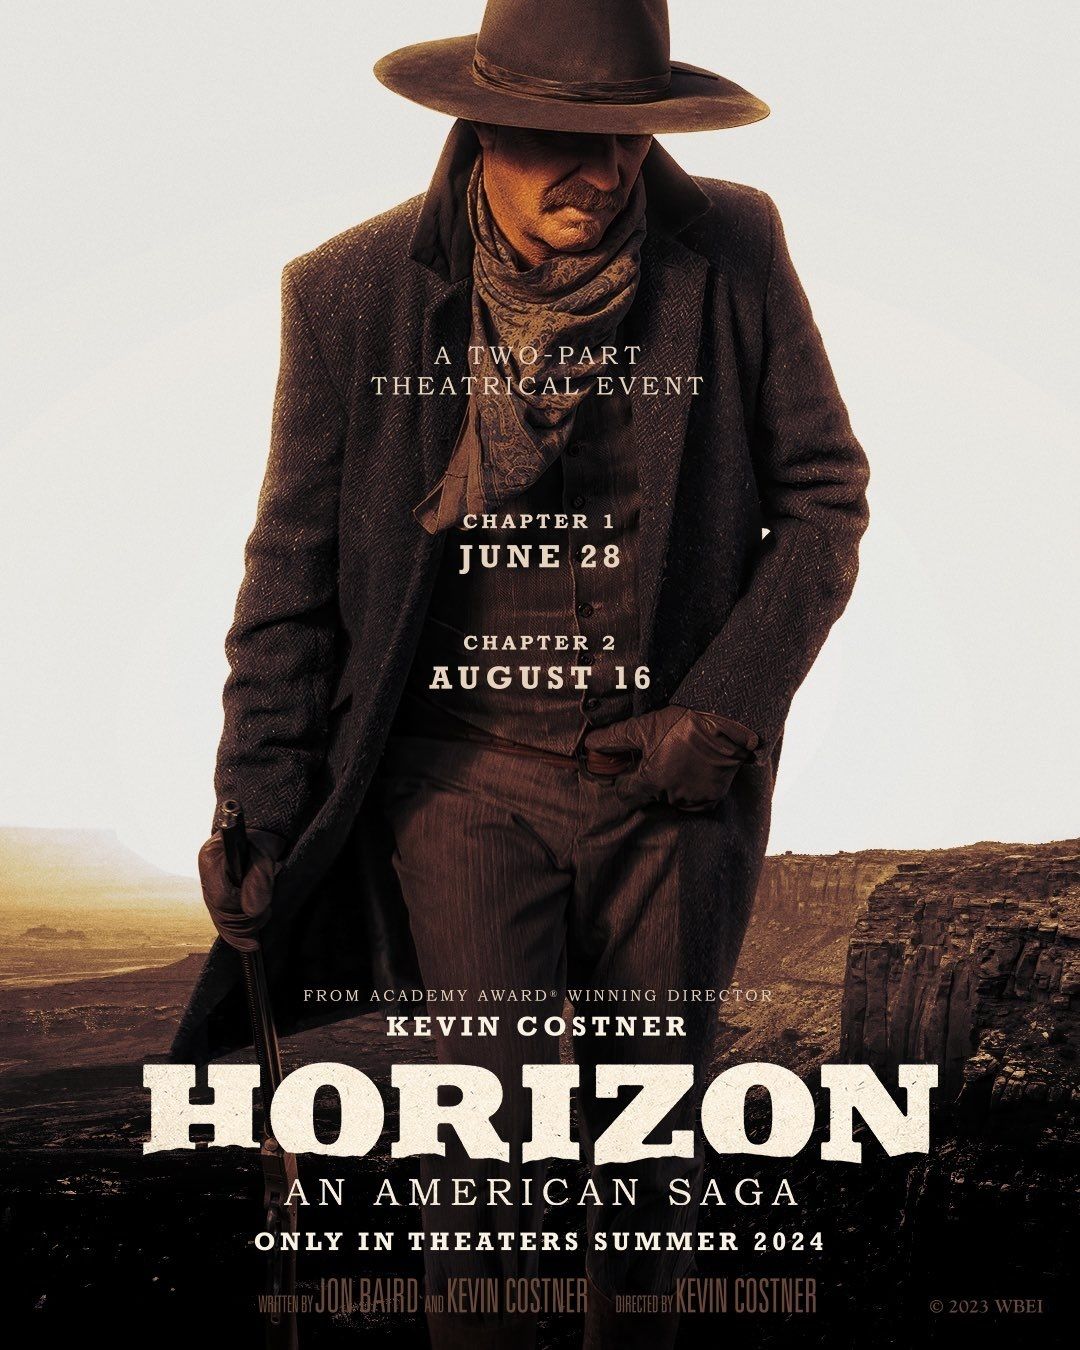 Kevin Costner's Western Epic, Horizon, Lands Summer Release Dates